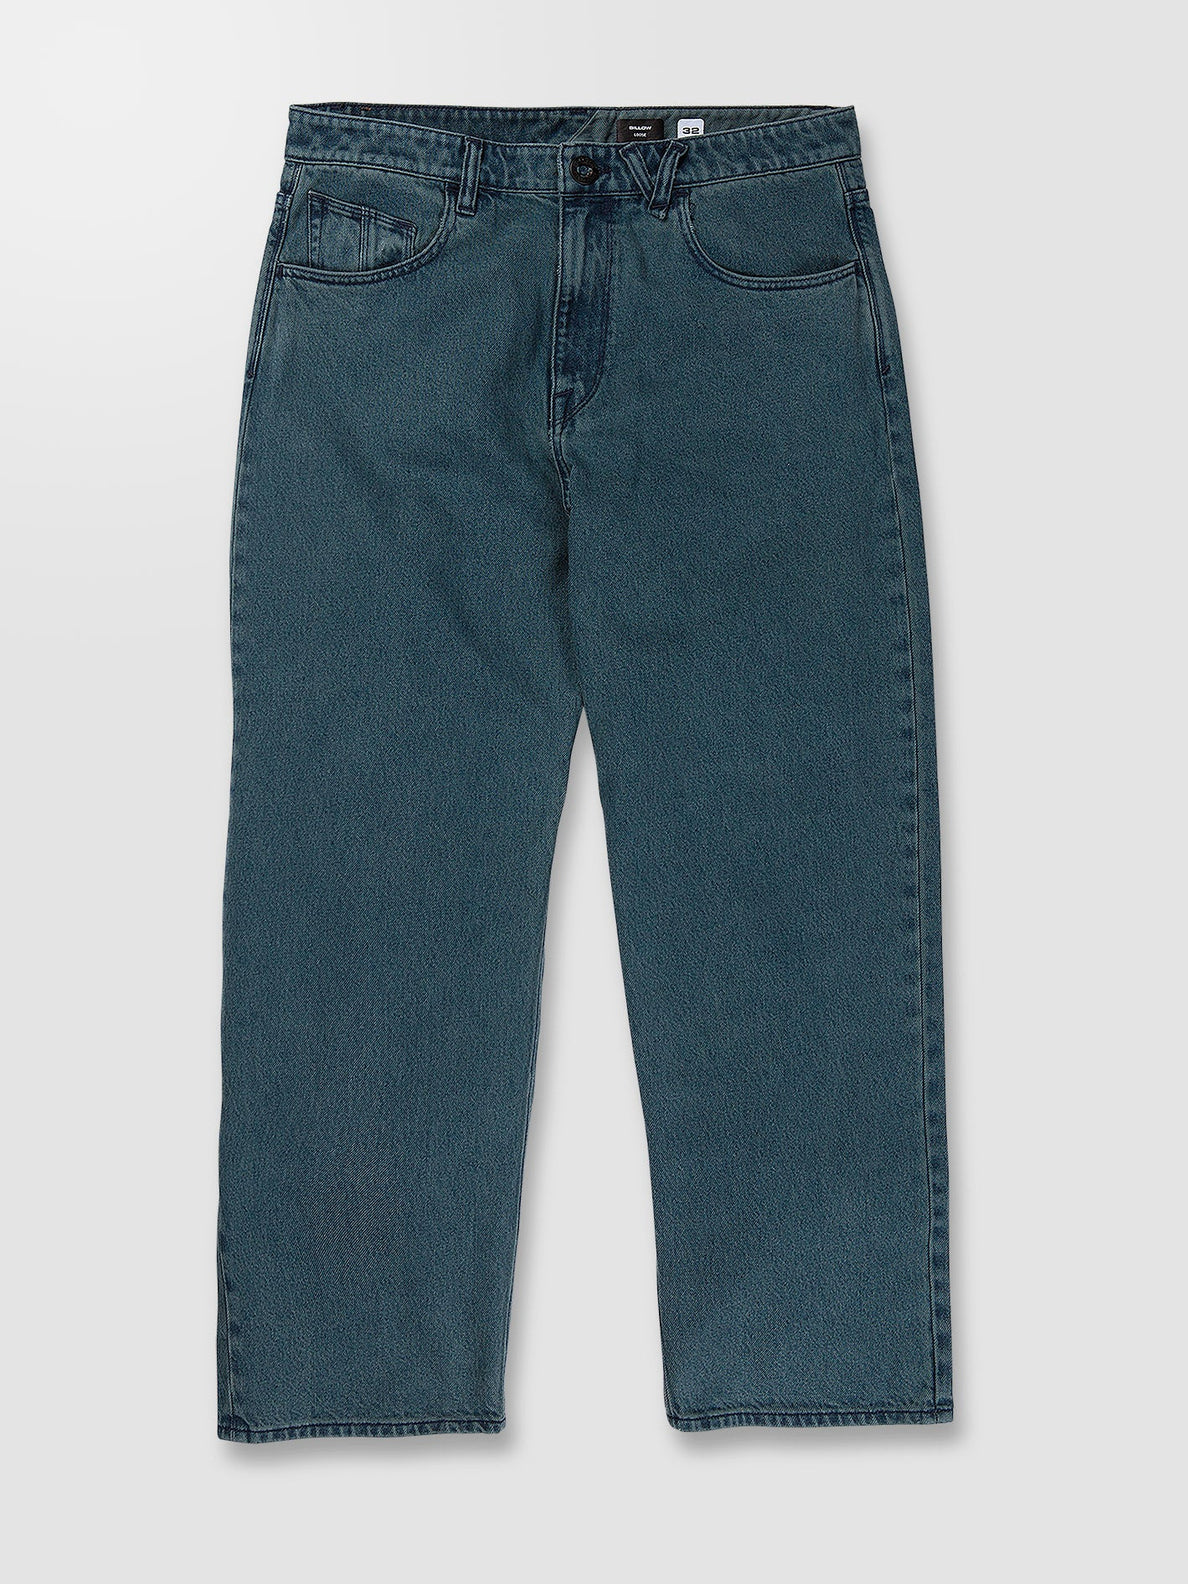 Billow Jeans - MARINA BLUE (A1932205_MRB) [9]